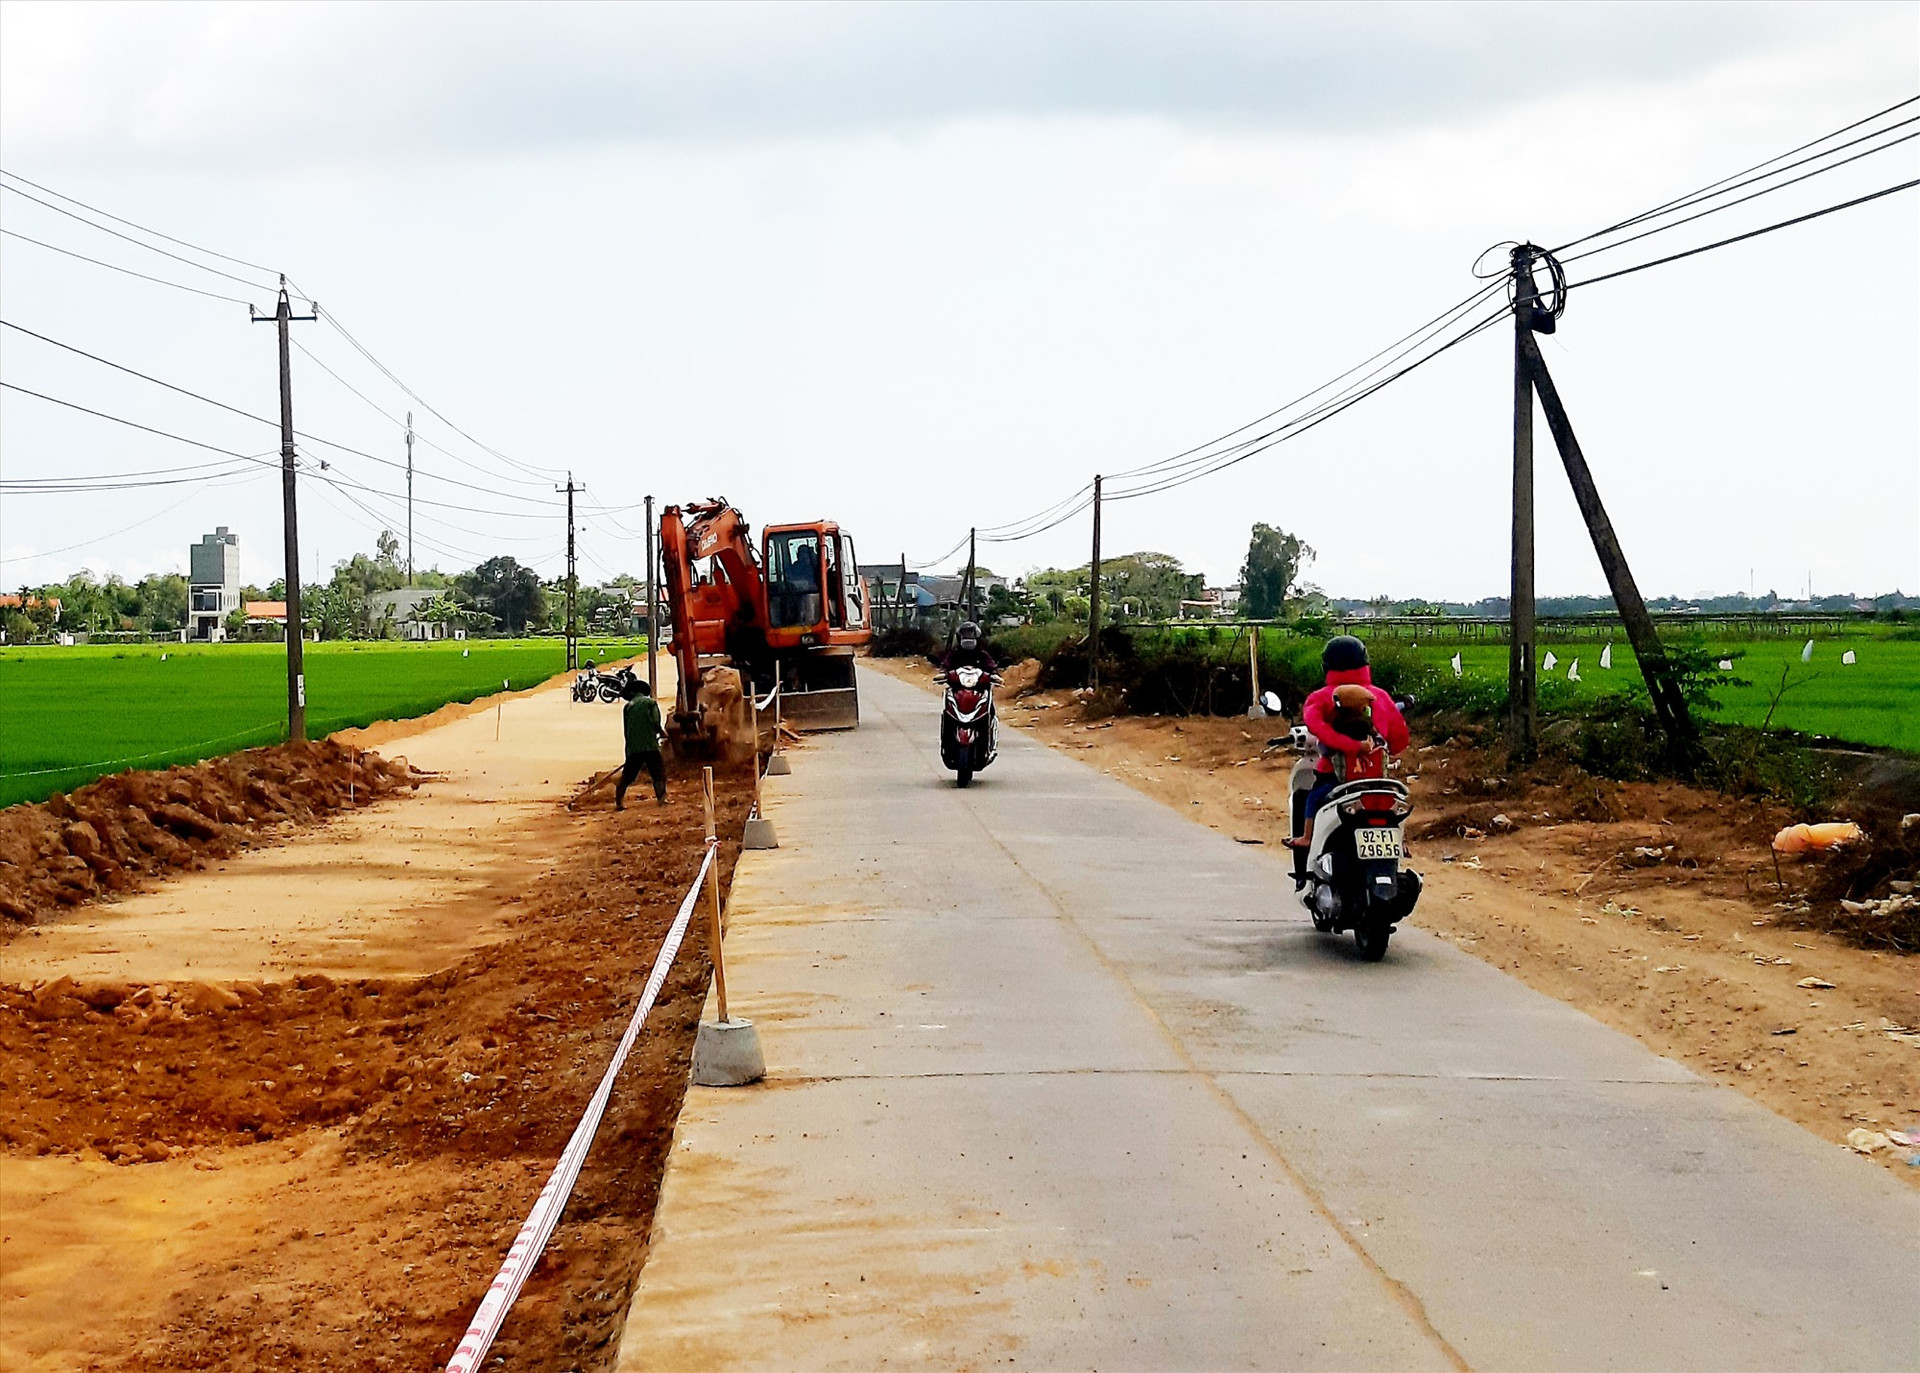 Hiện nay, huyện Duy Xuyên chưa đạt chuẩn tiêu chí về giao thông vì cần phải đầu tư xây dựng thêm 15km tuyến đường ĐH. Ảnh: N.P